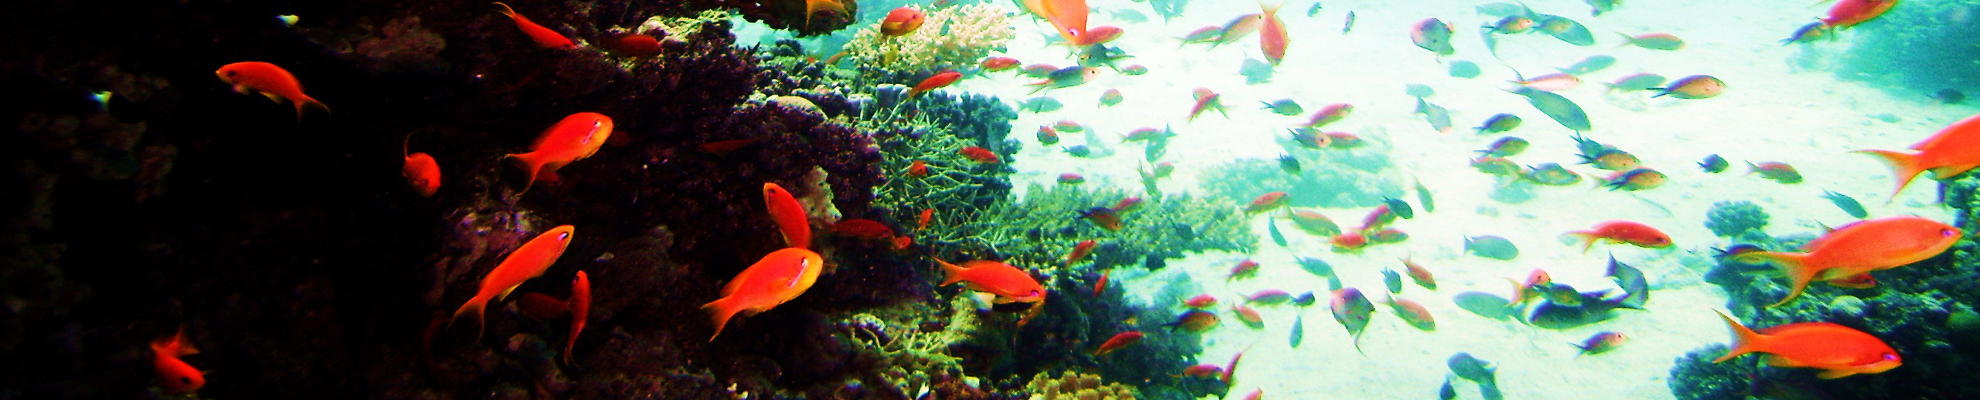 Meerwasser Aquarium Referenzen